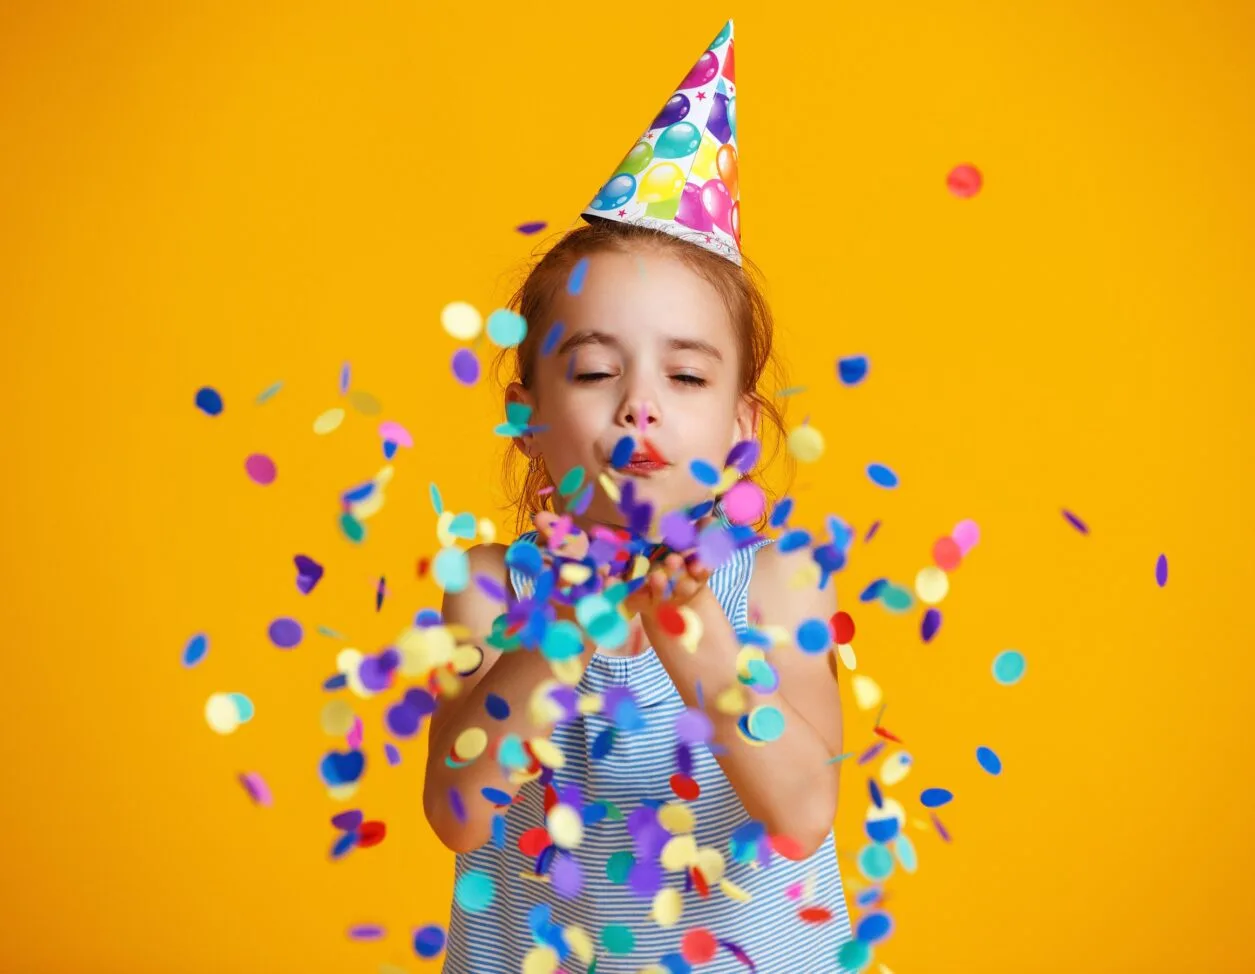 Verjaardag kind vieren; tips met familie of alternatieve ideeën